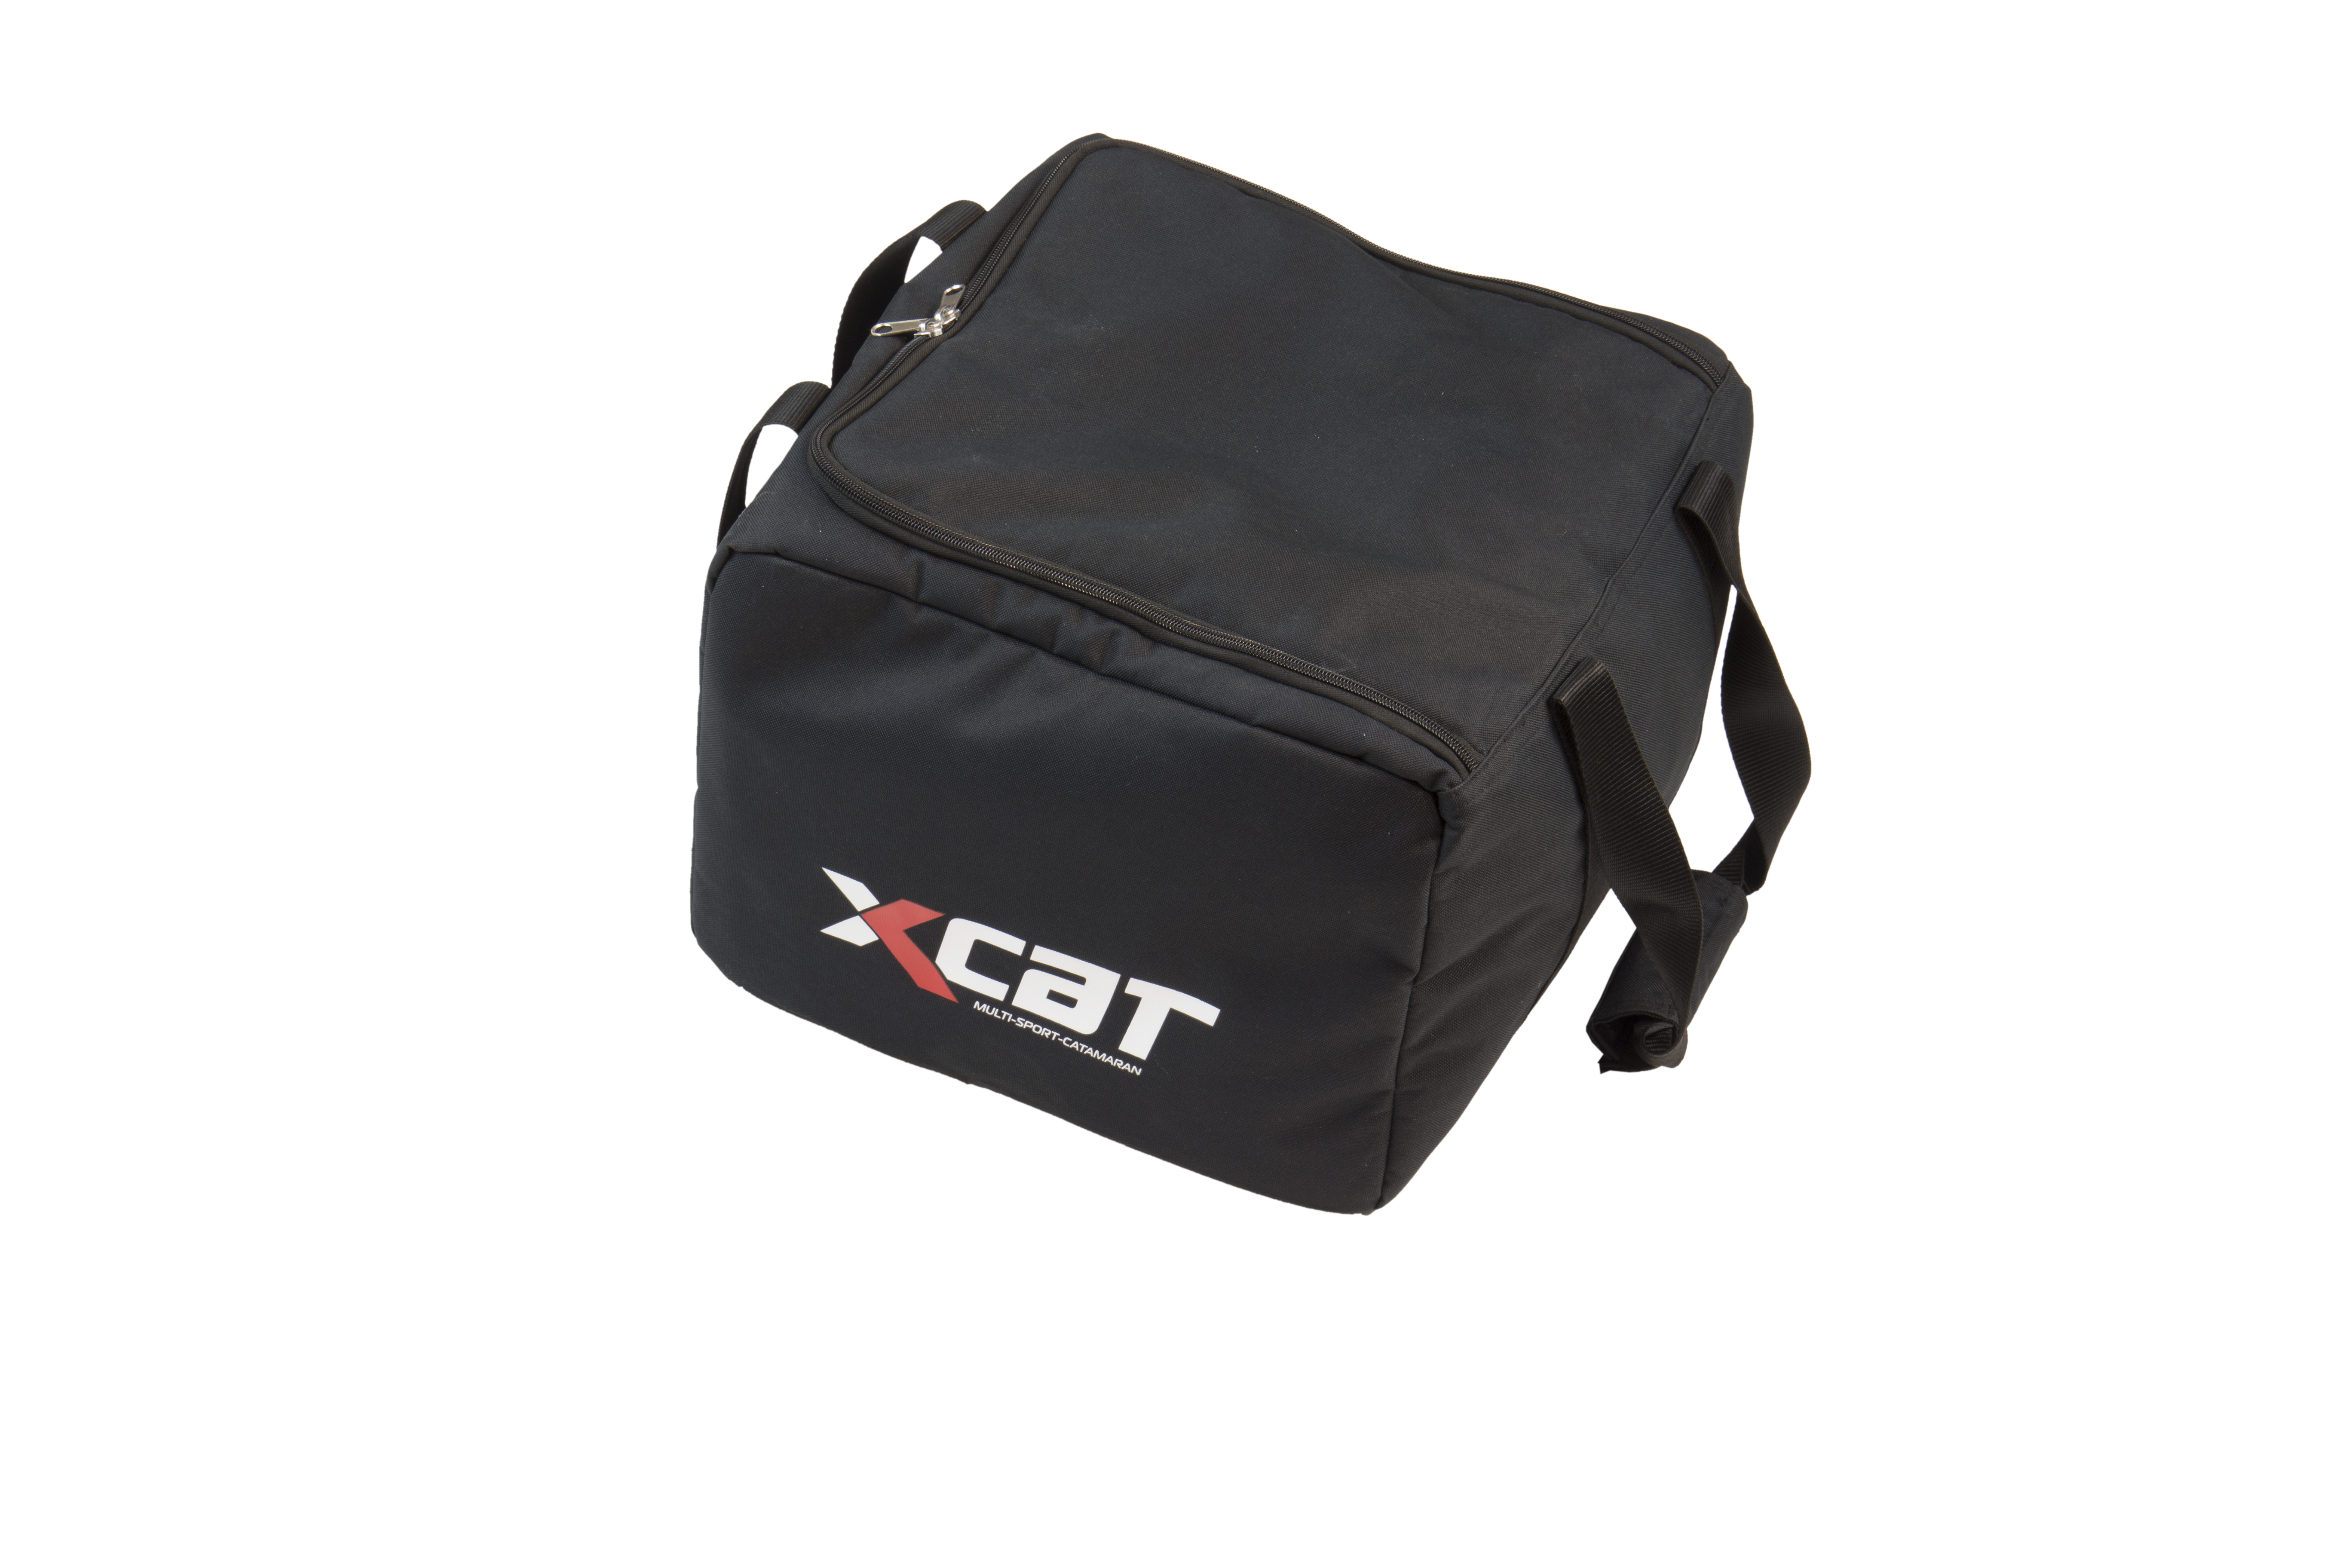 XCAT Small Bag